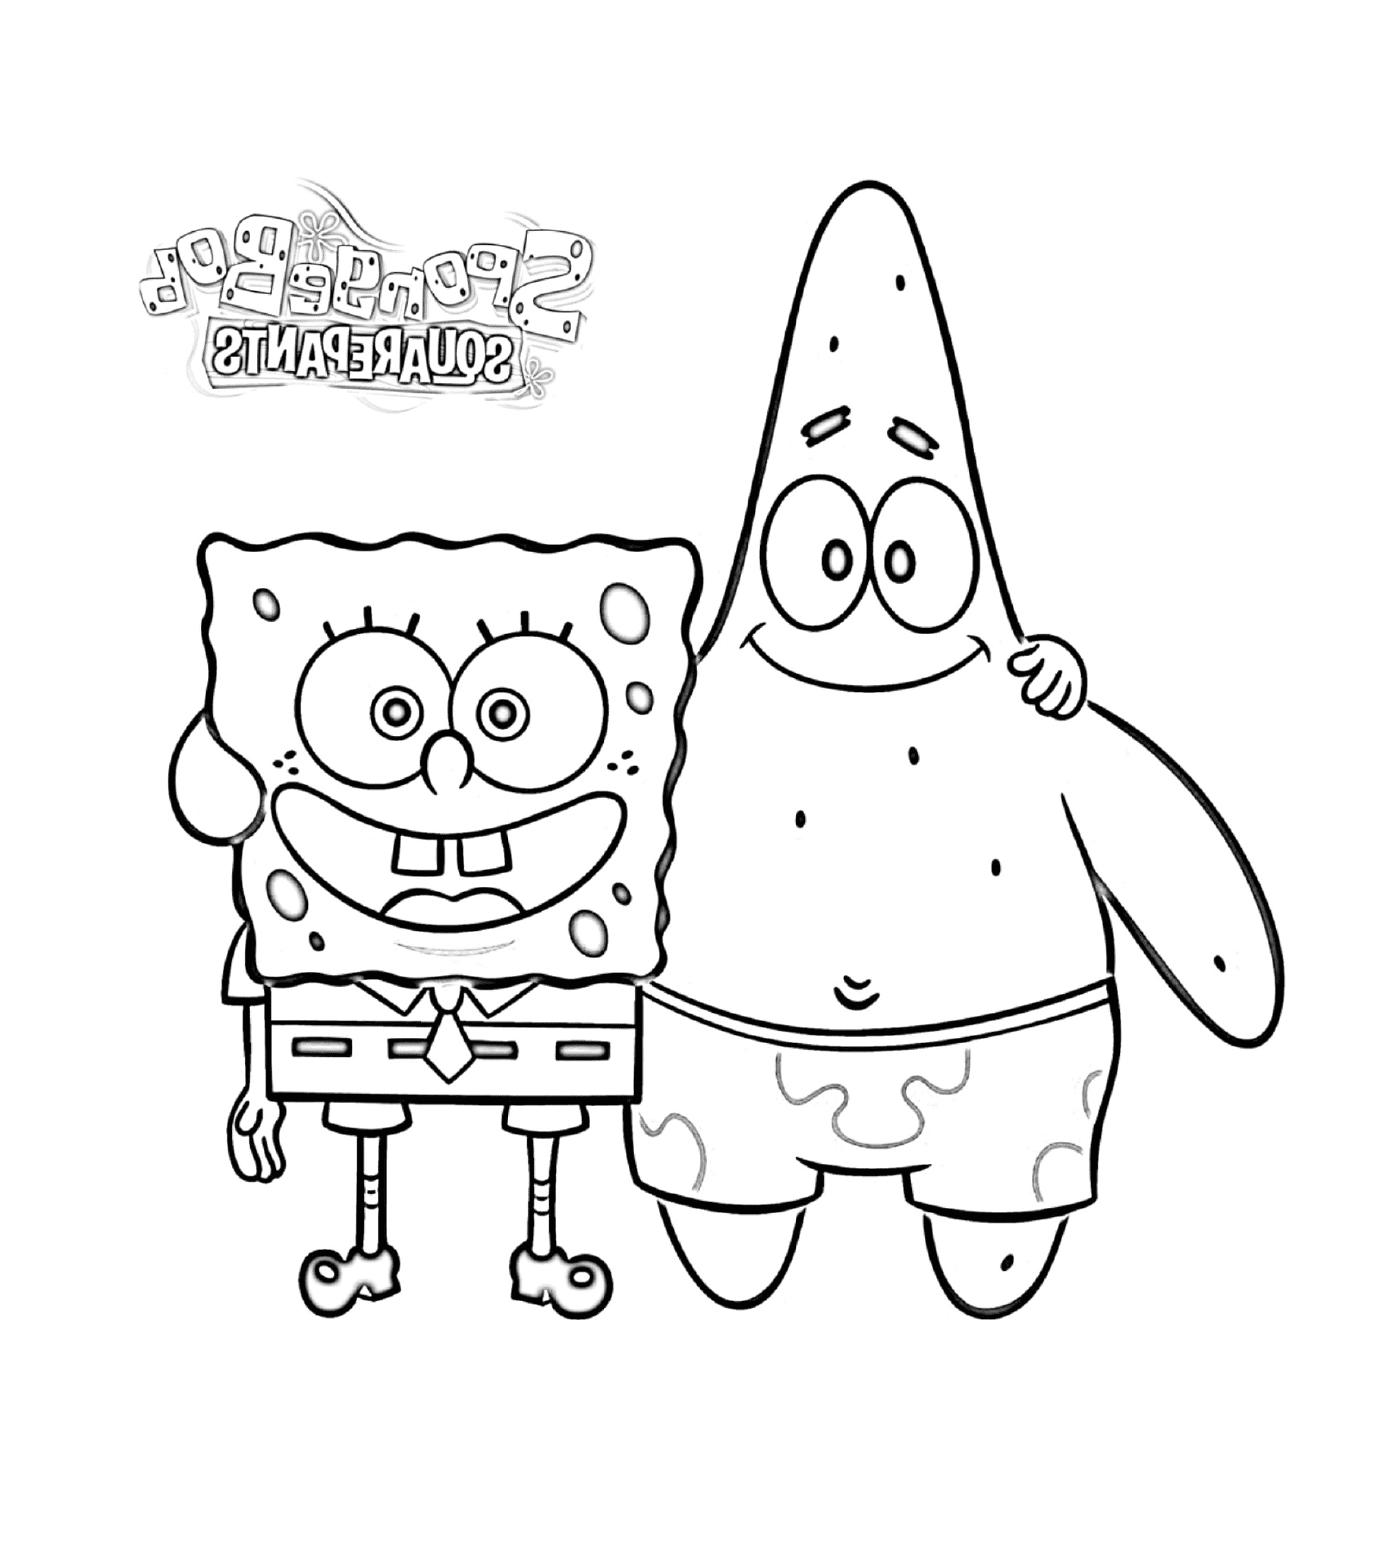 coloriage bobleponge et Patrick Friends